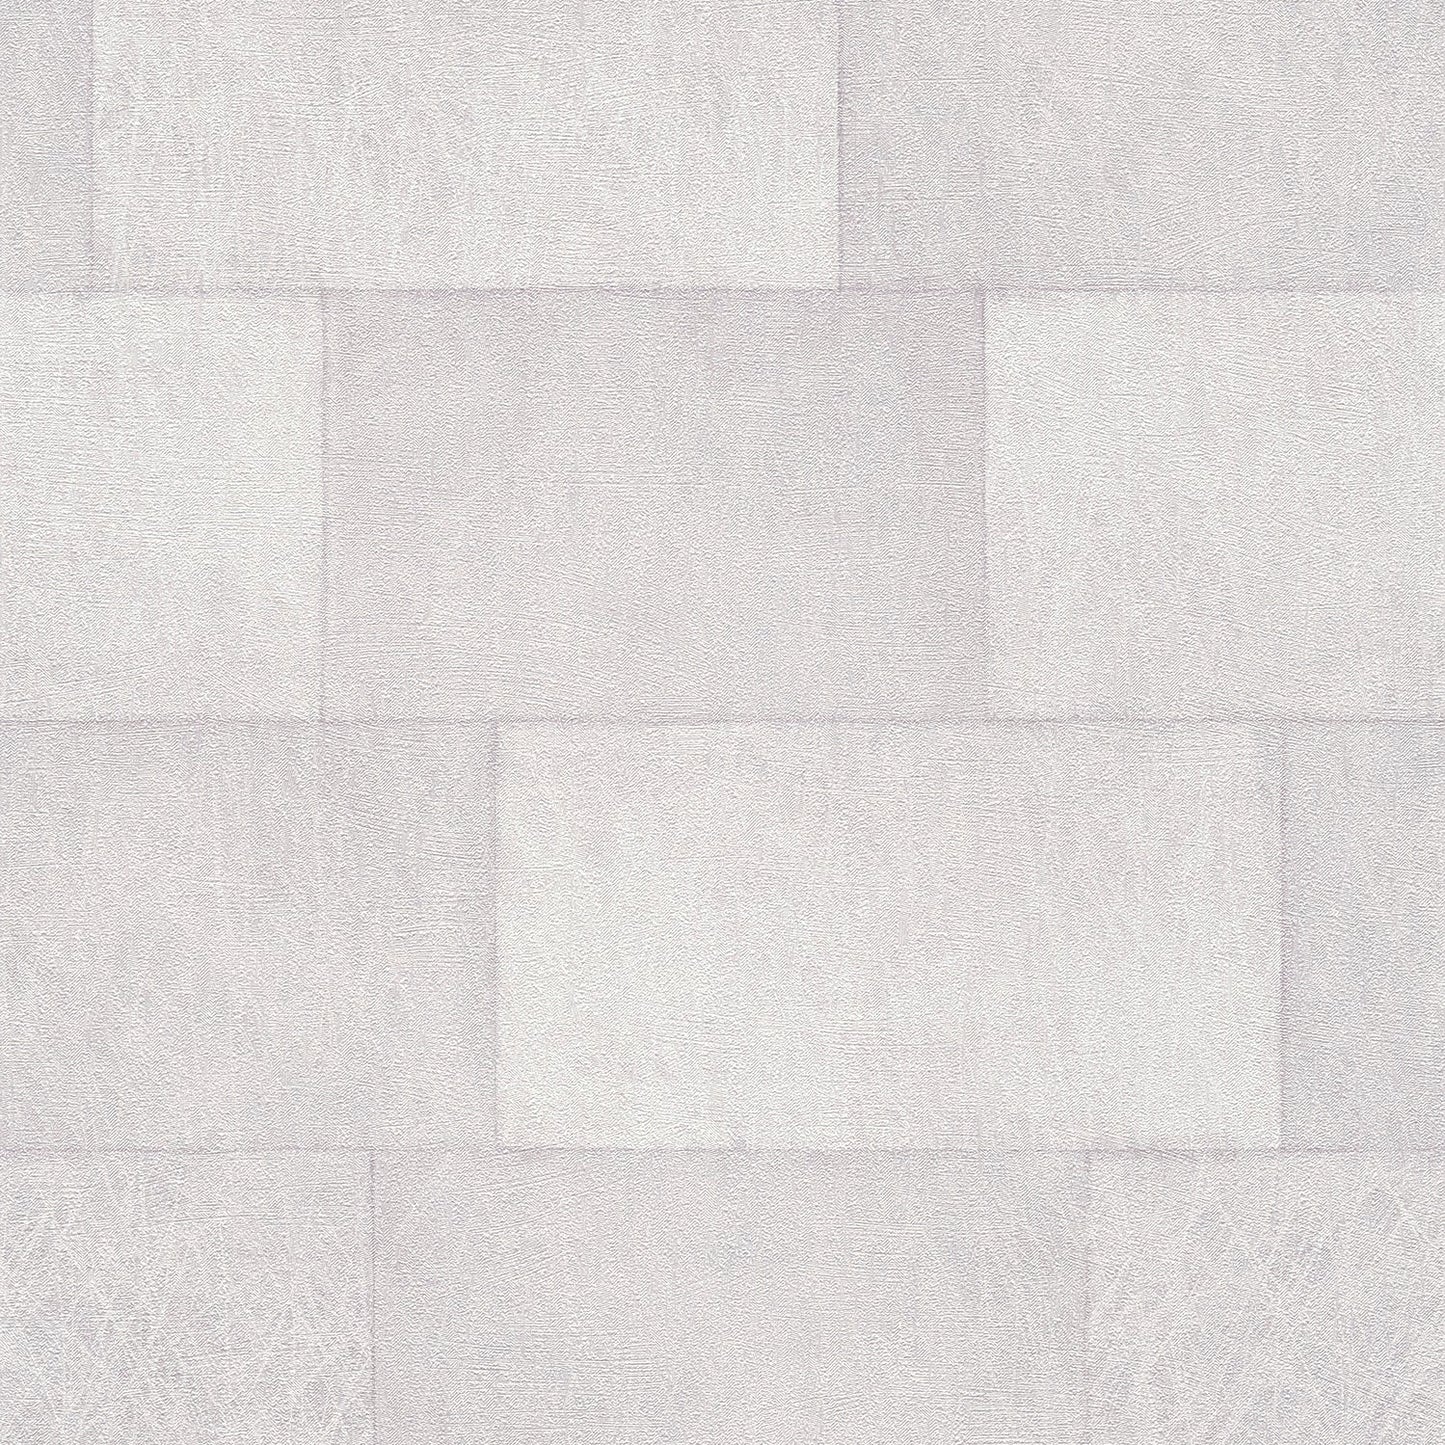 Order 4082-382012 Titanium Lyell White Stone Wallpaper White by Advantage